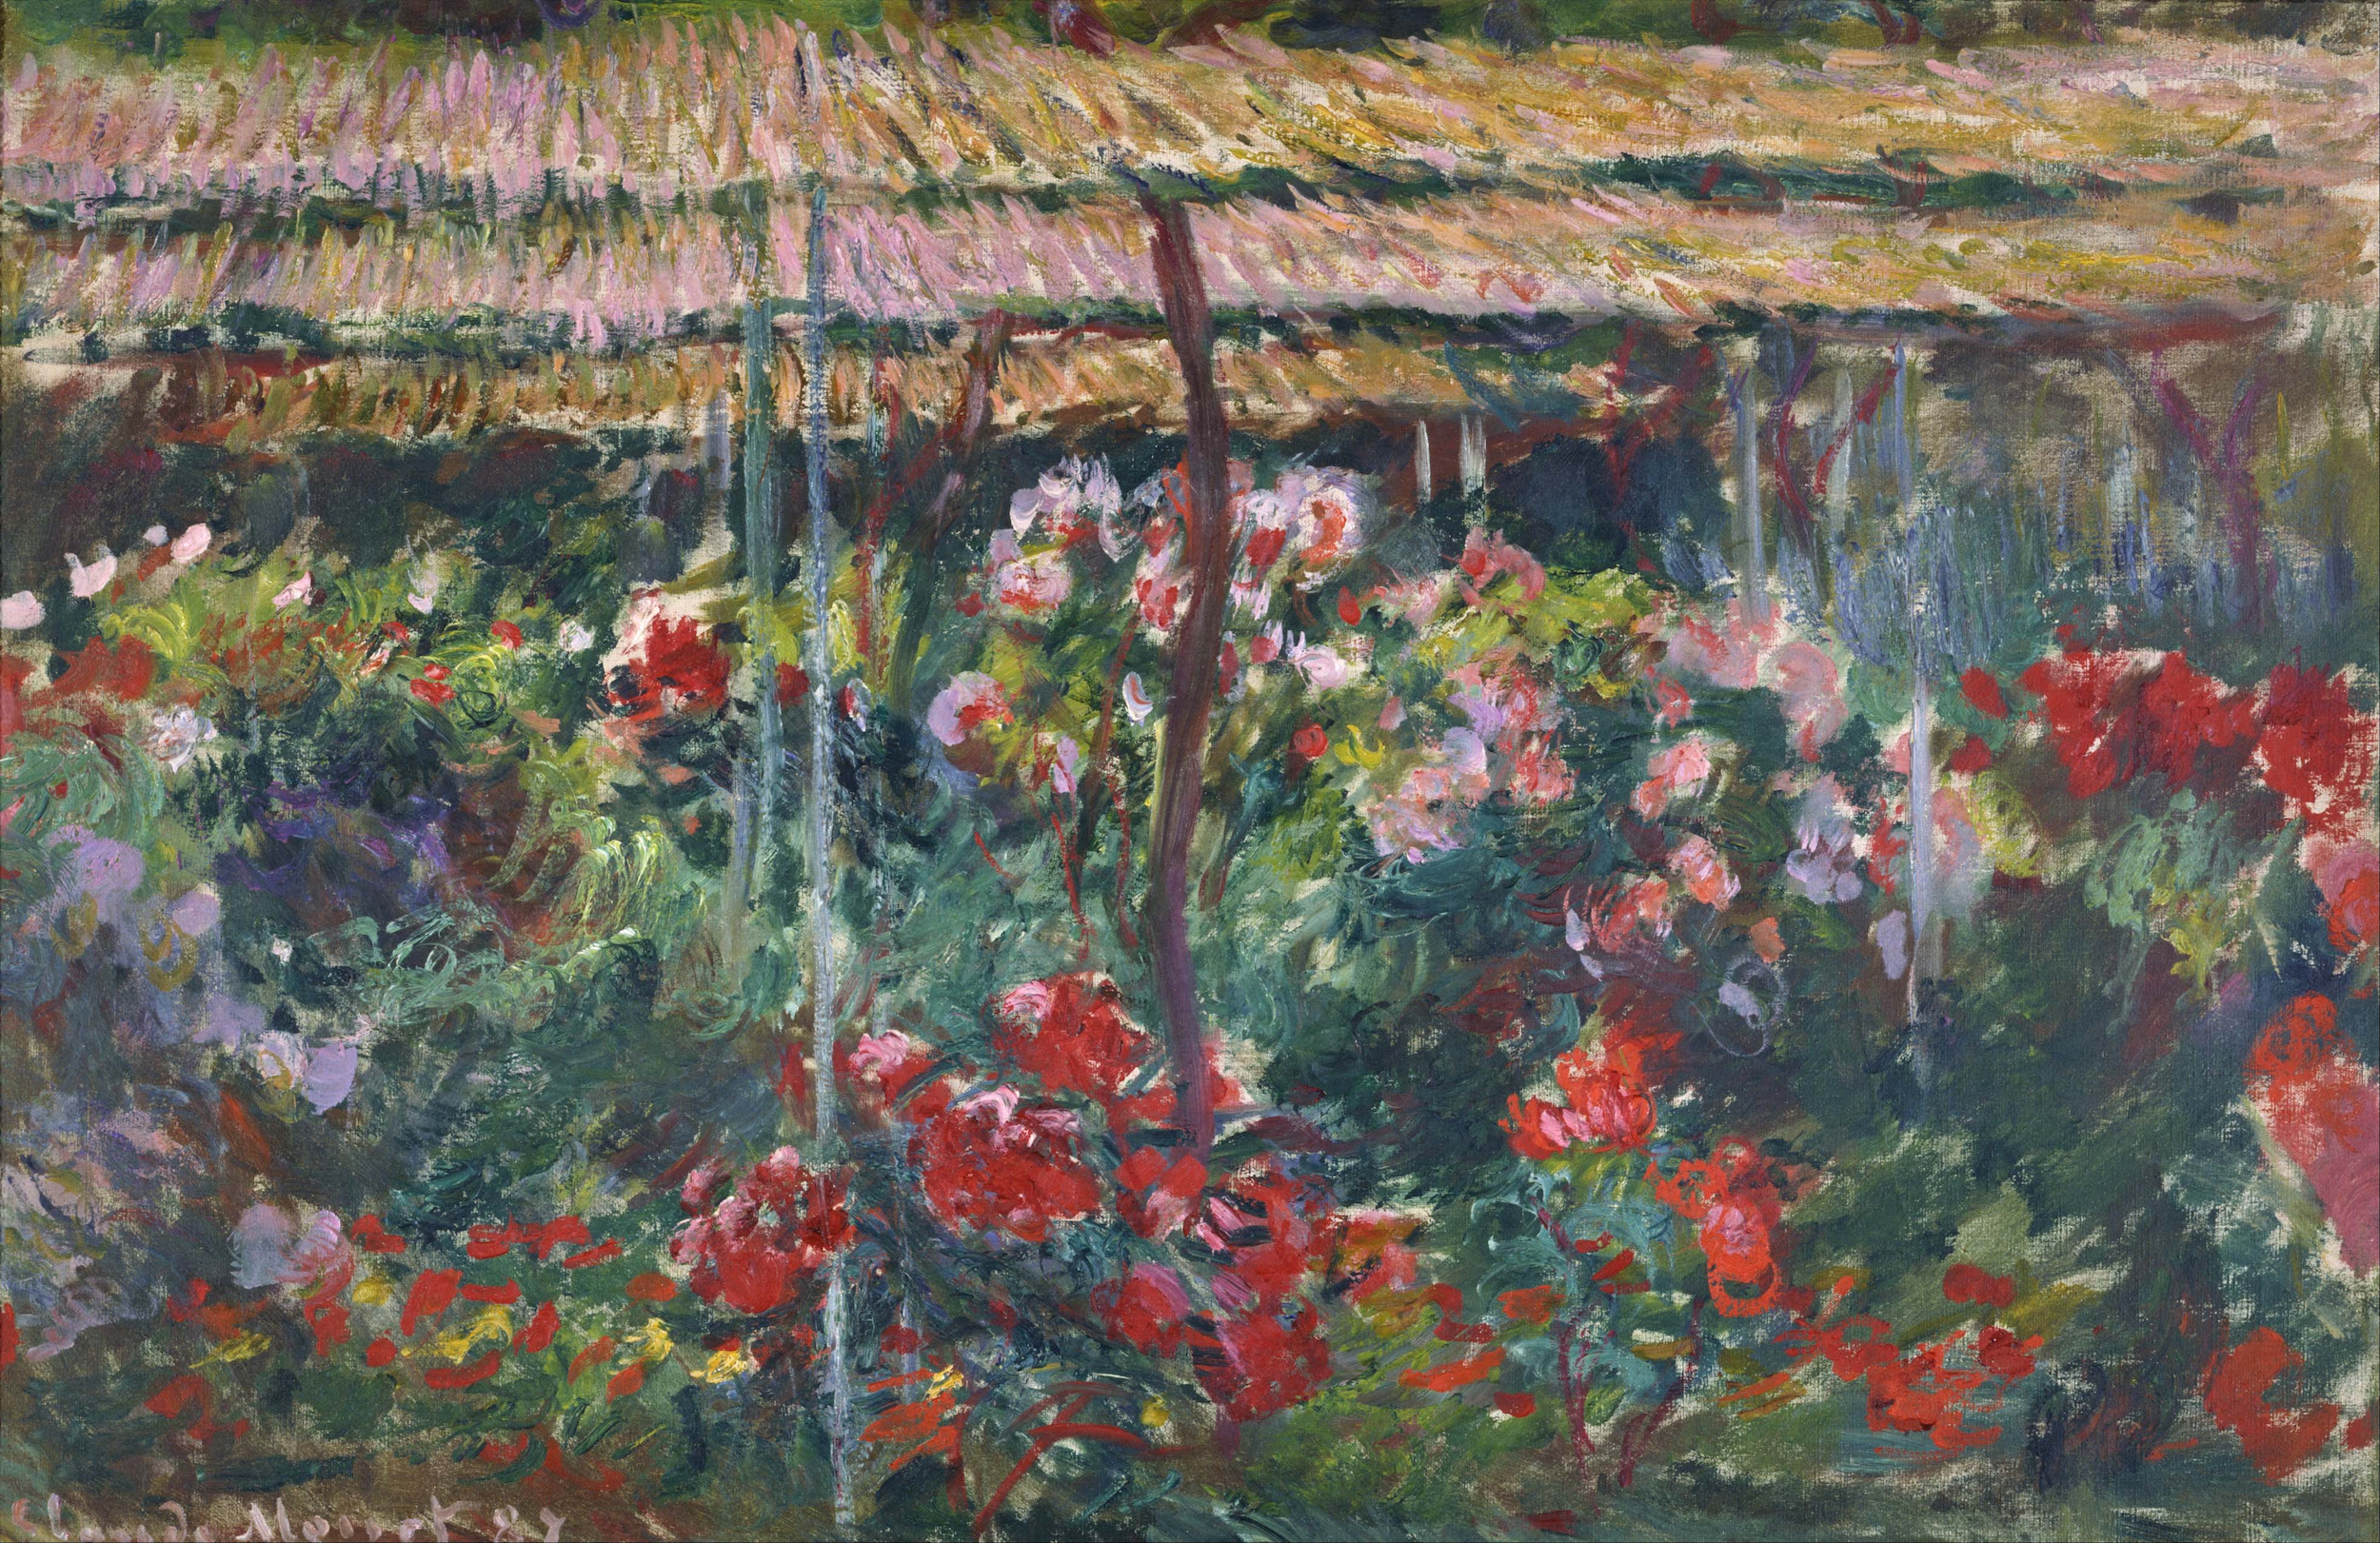 牡丹園 by Claude Monet - 1887 - 100 x 65.3 cm 